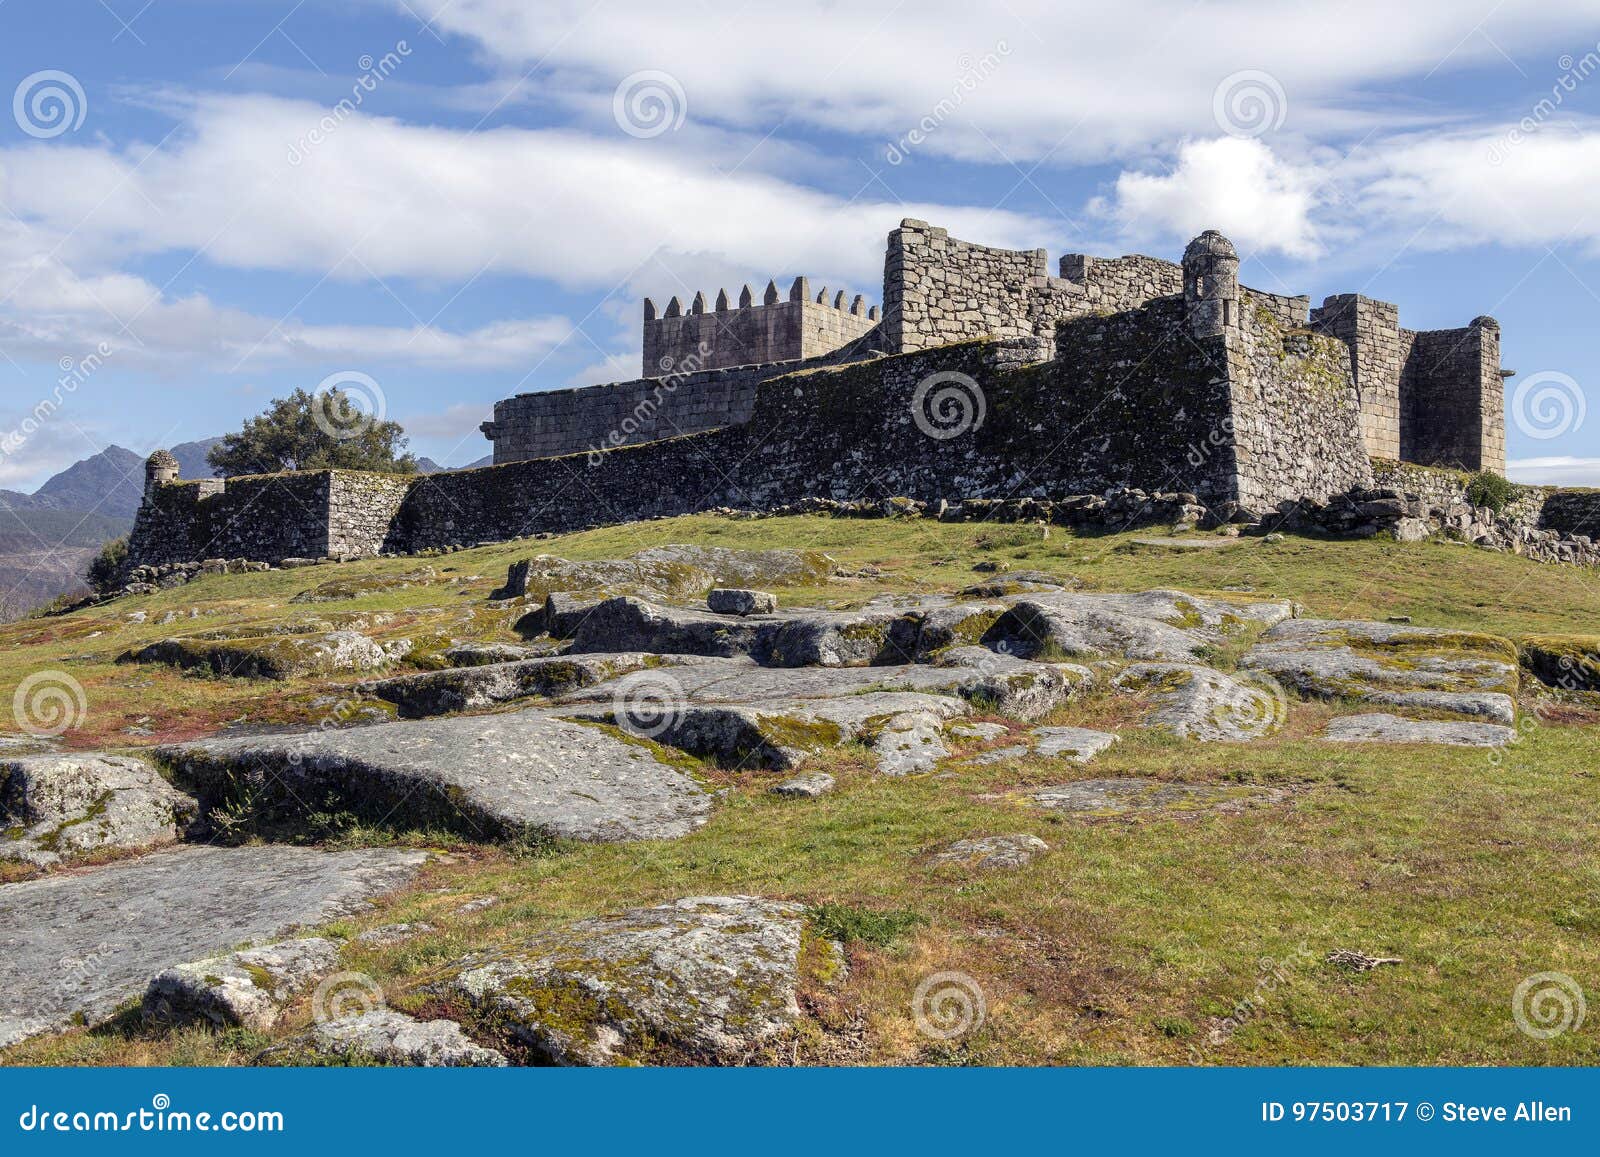 lindoso castle - parque nacional da peneda-geres - portugal